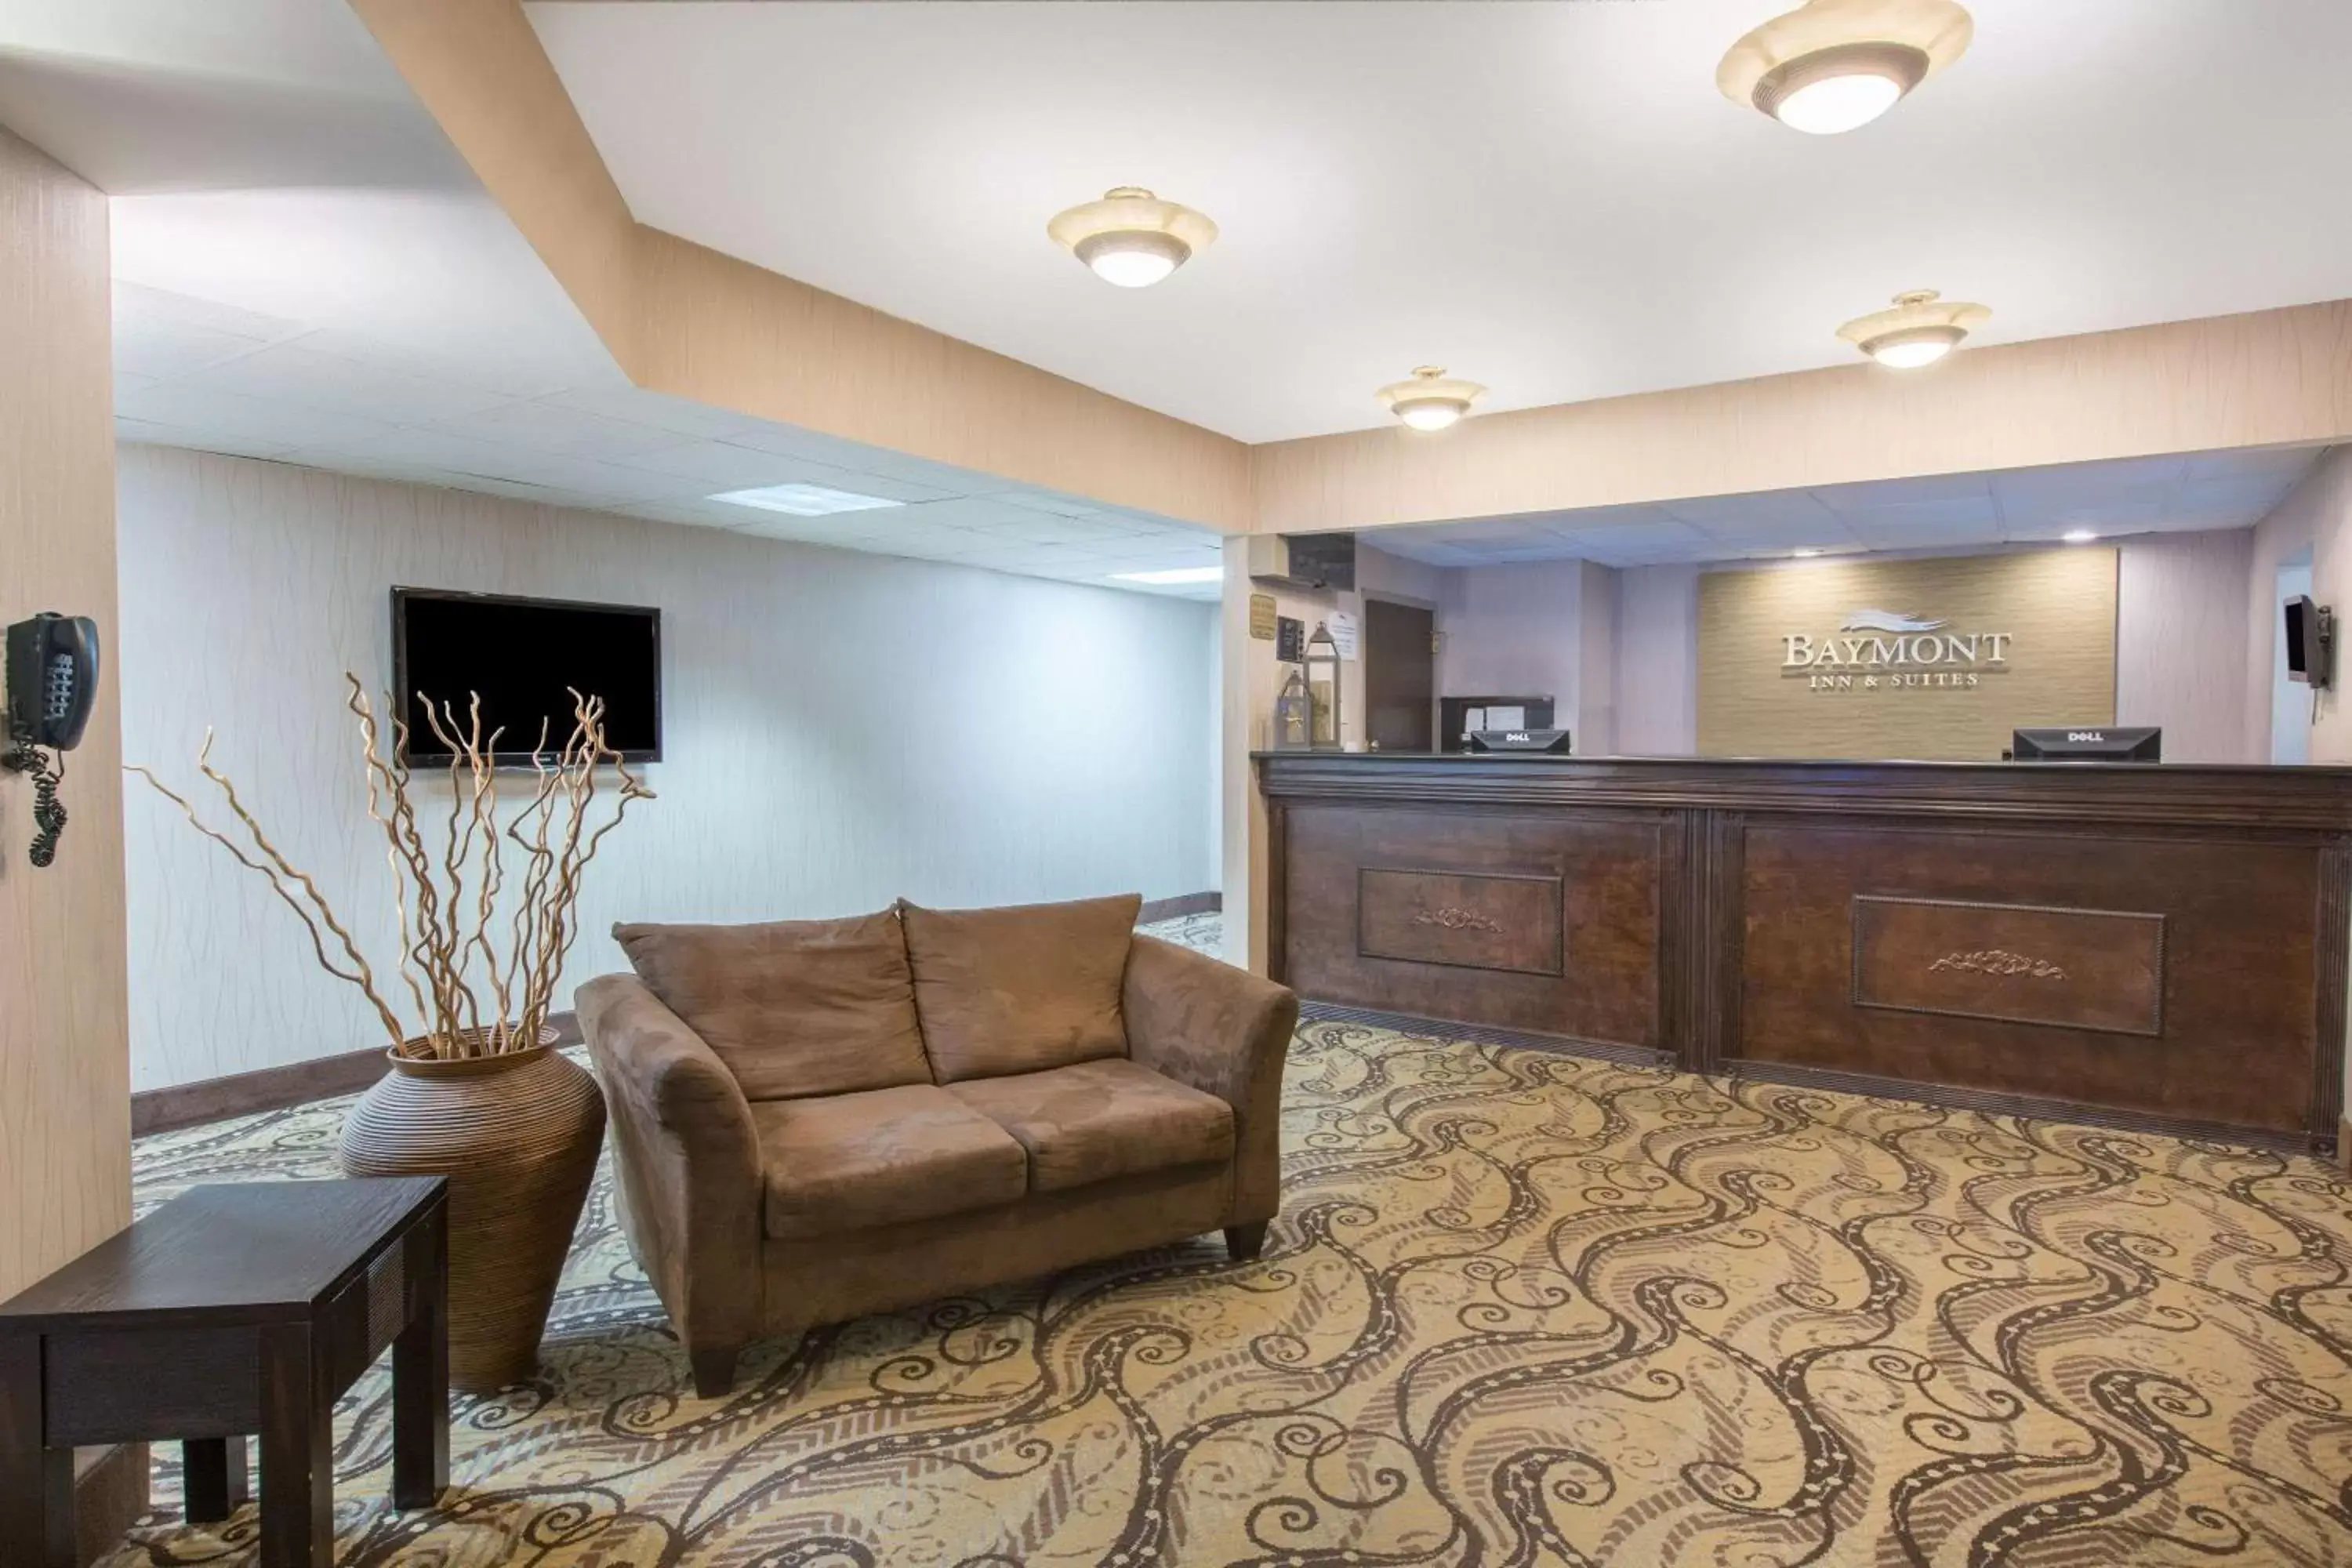 Lobby or reception, Lobby/Reception in Baymont by Wyndham Bartonsville Poconos